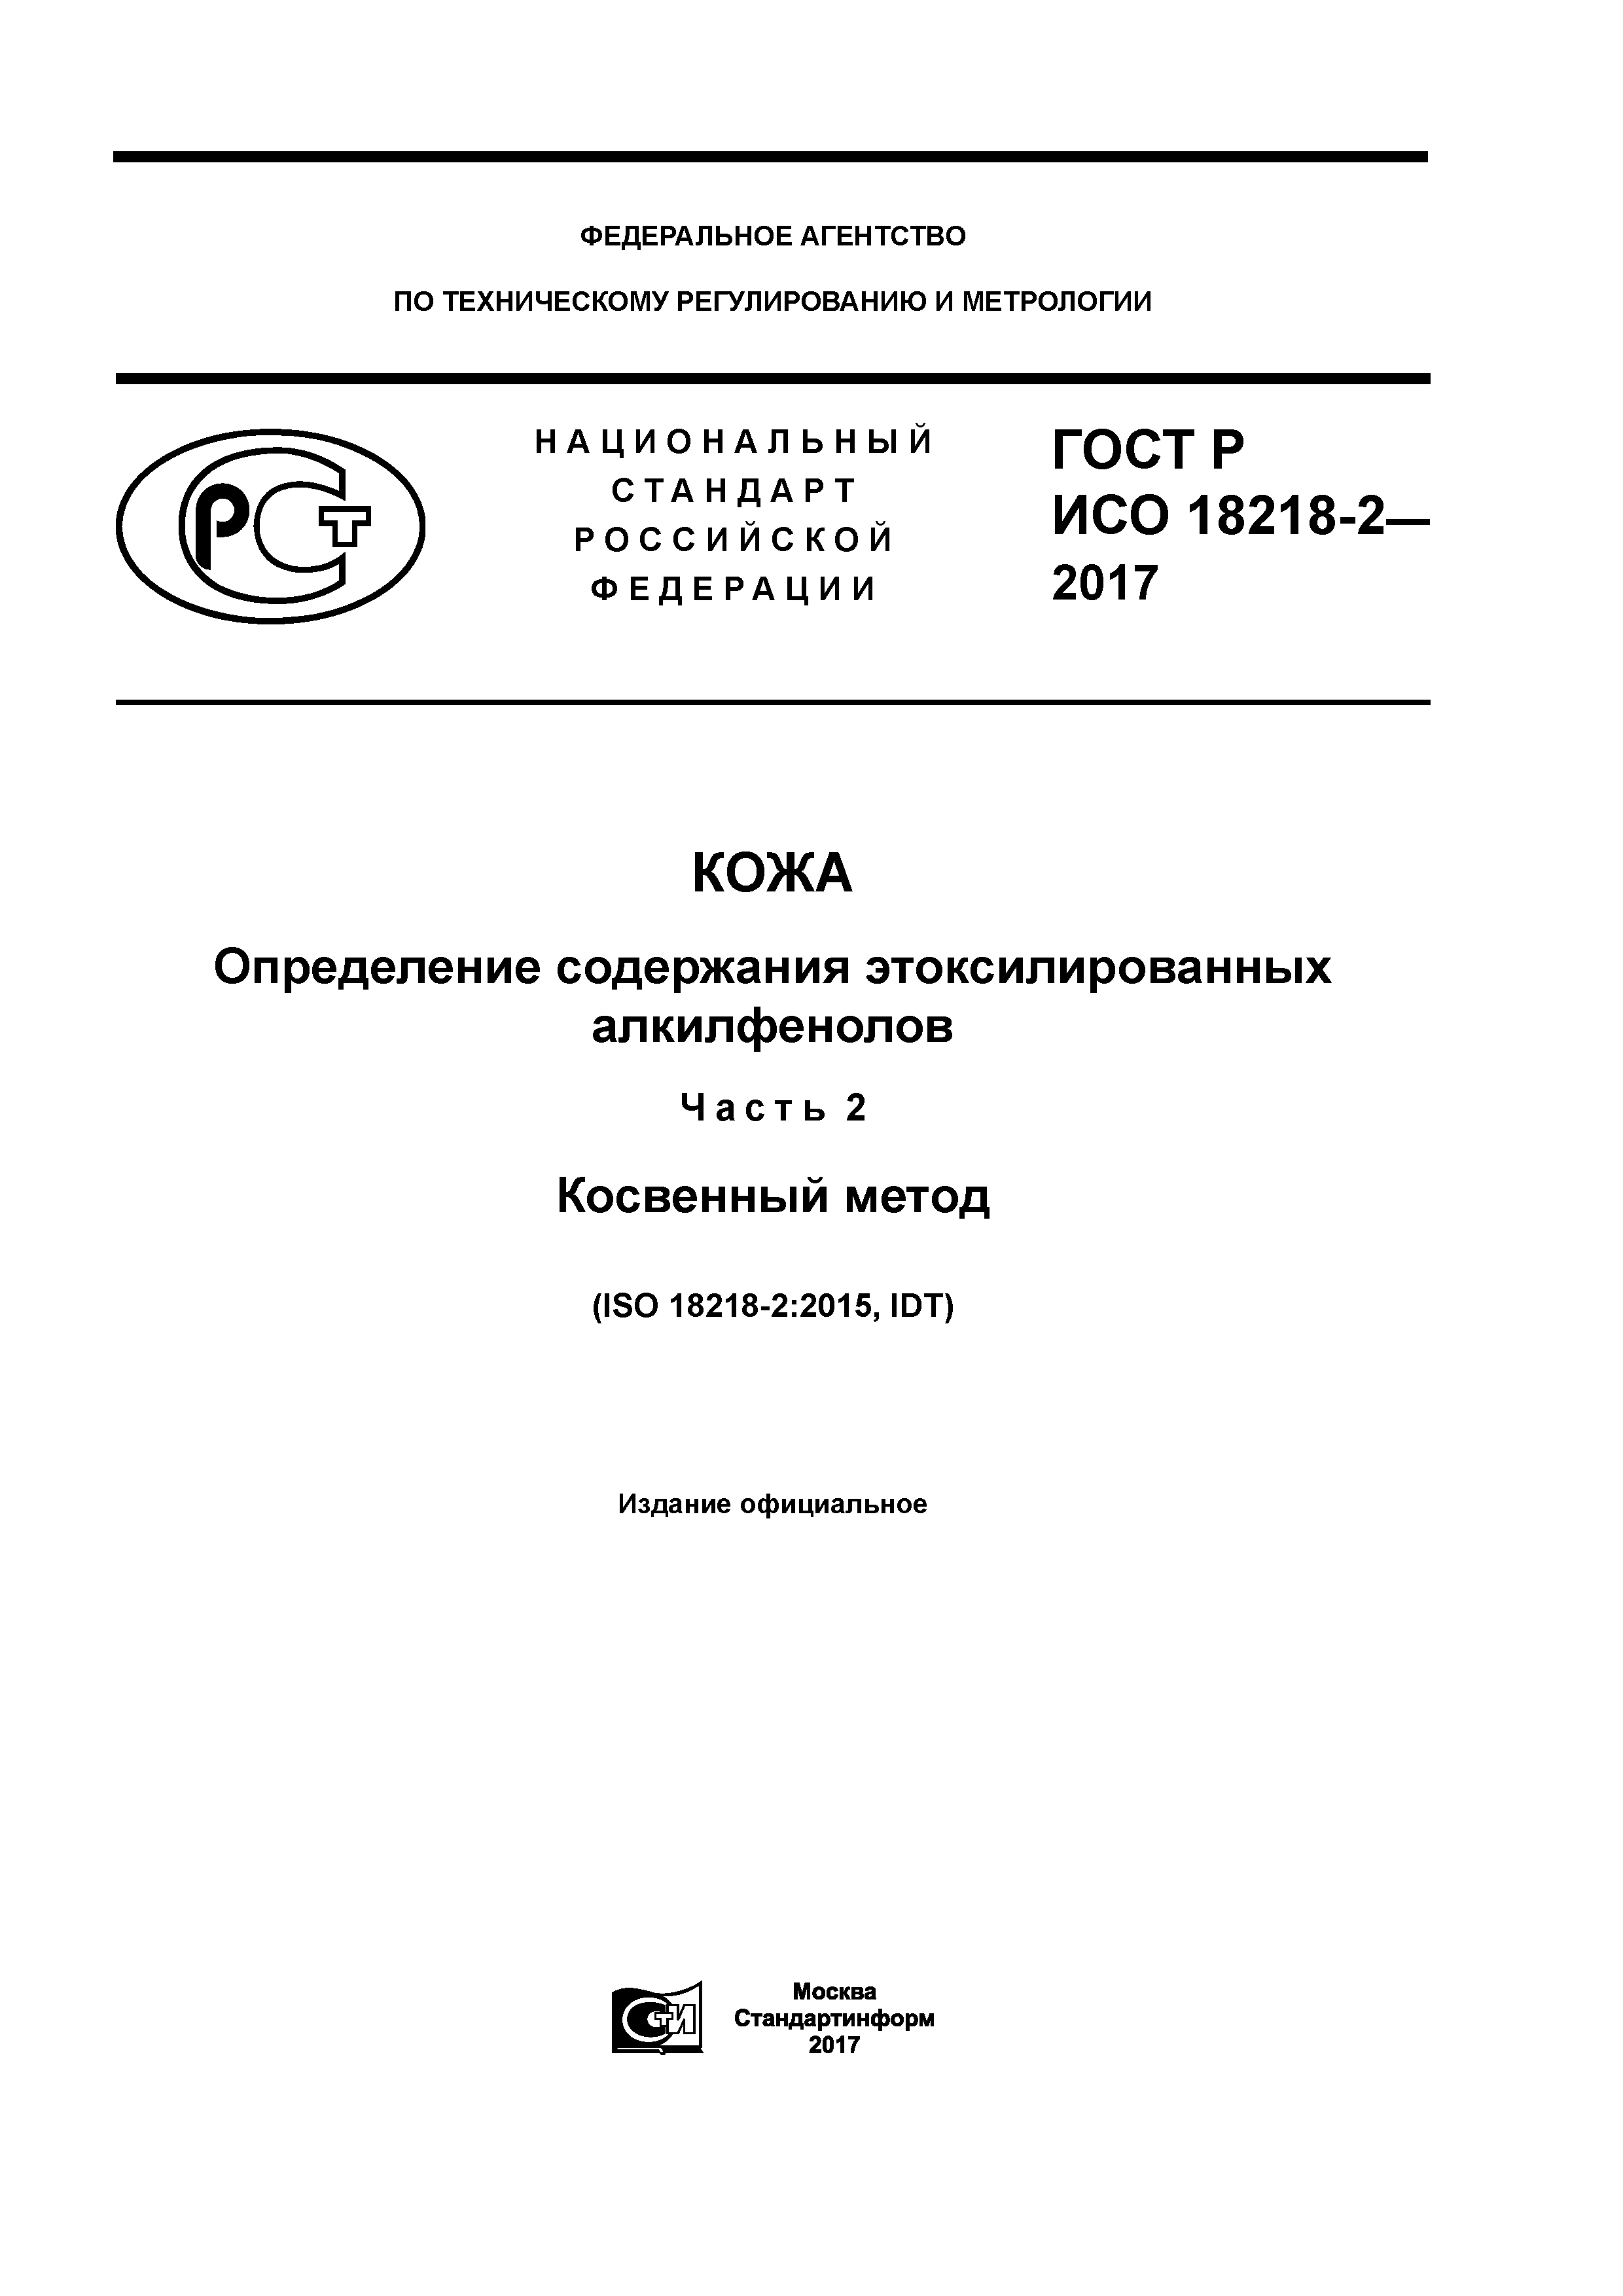 ГОСТ Р ИСО 18218-2-2017